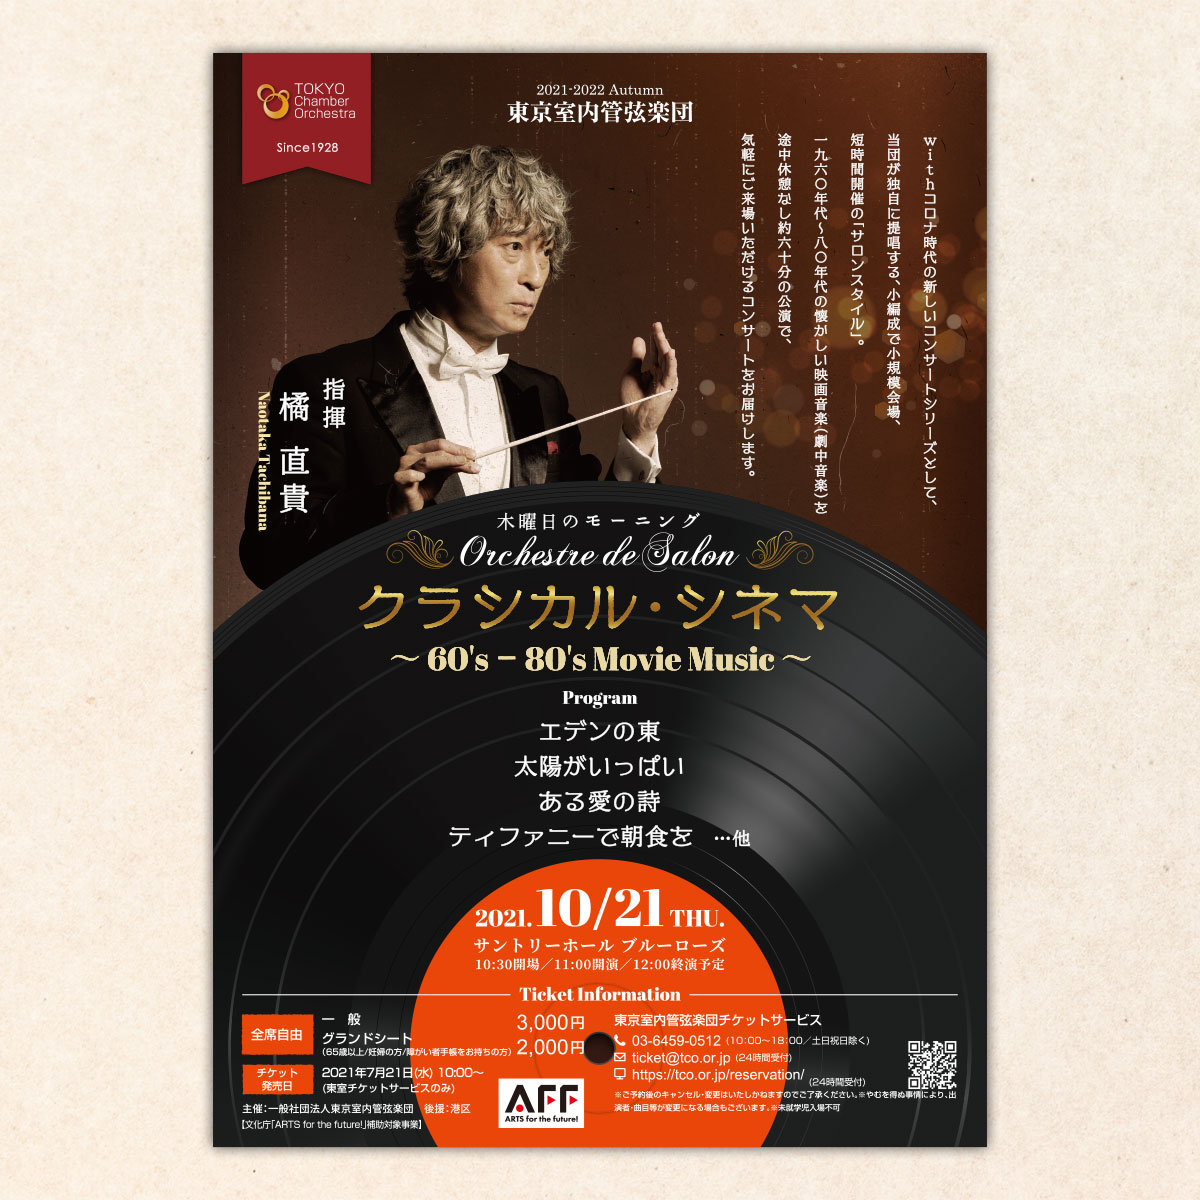 「東京室内管弦楽団」様のOrchestra de Salon 木曜日のモーニング の チラシ制作を実績紹介に追加しました